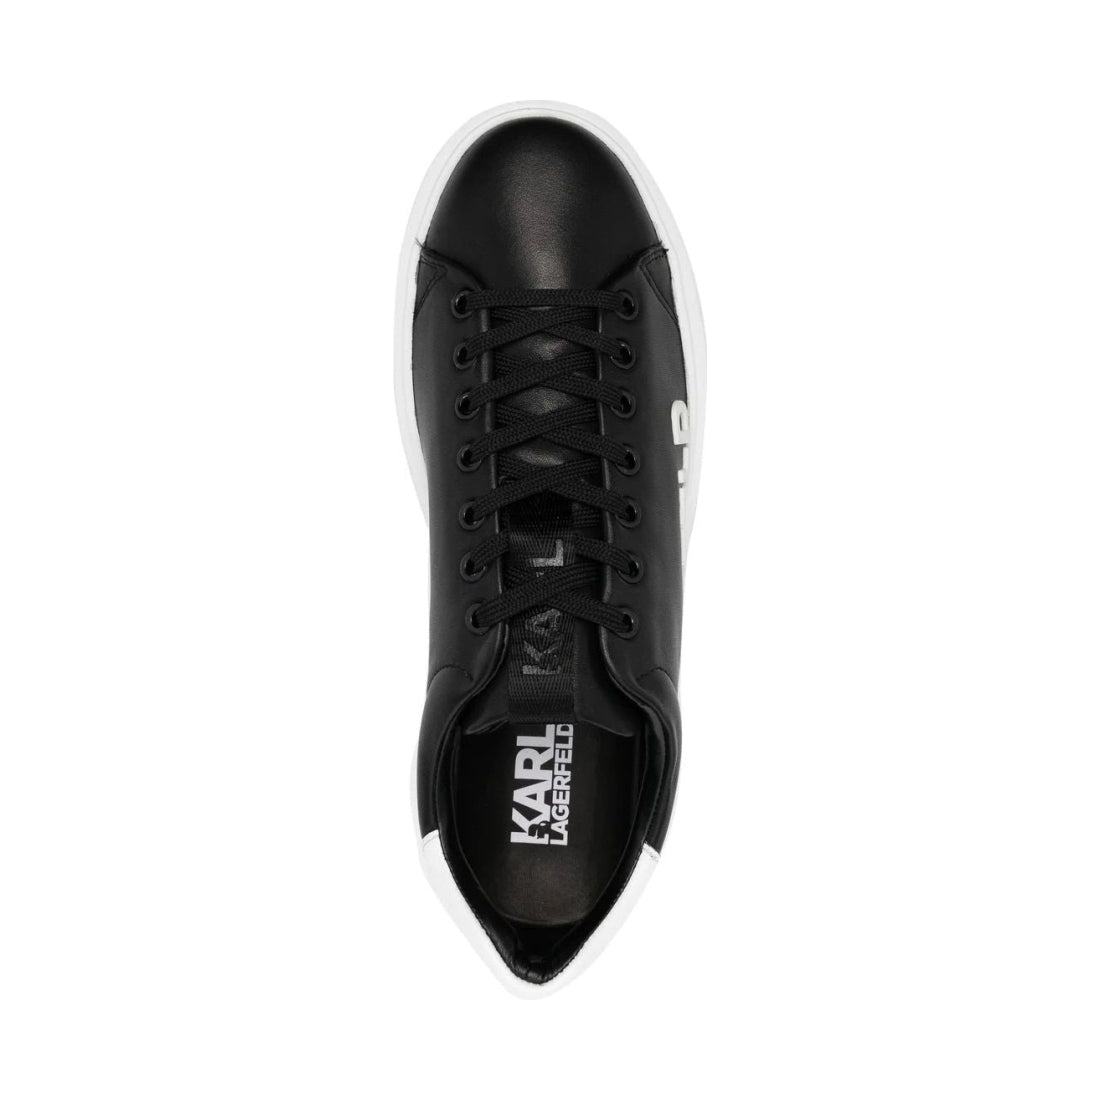 KARL LAGERFELD mens black, white lthr maxi kup karl sneakers | Vilbury London